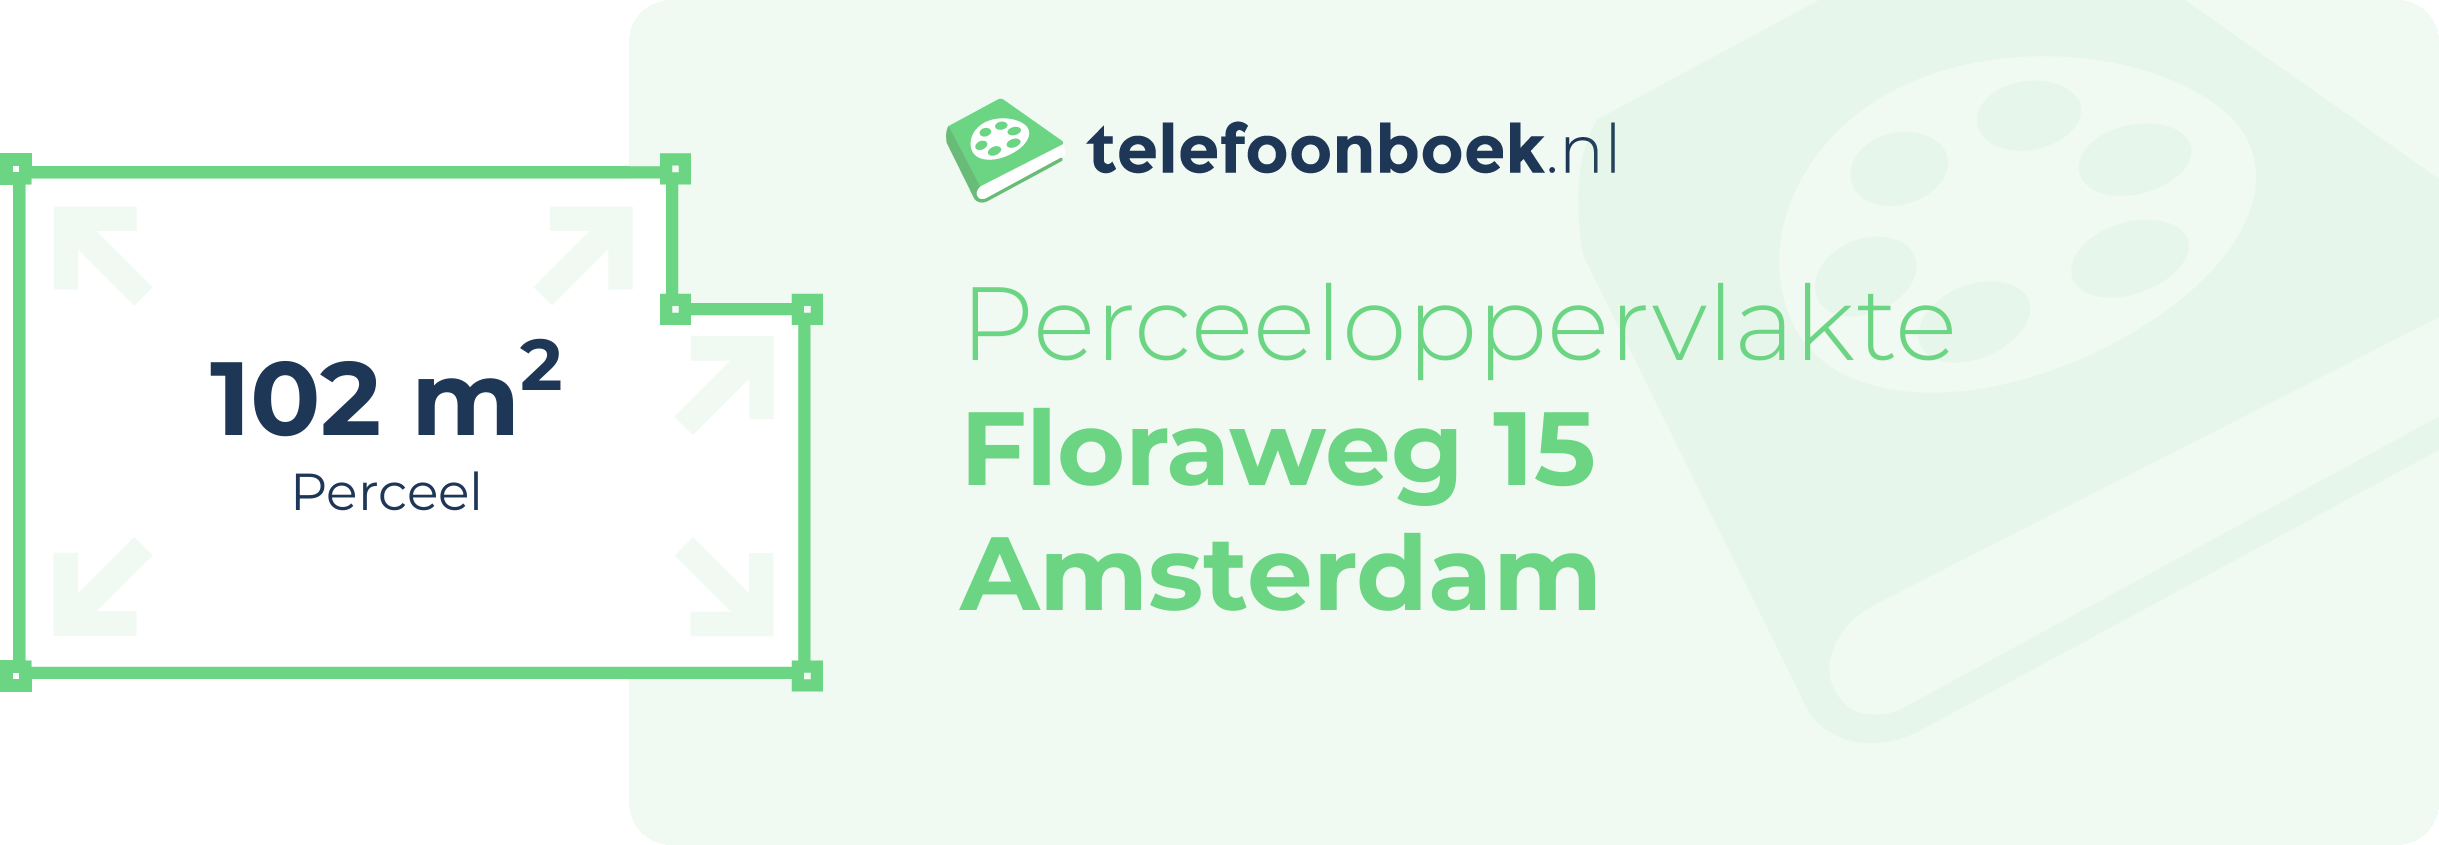 Perceeloppervlakte Floraweg 15 Amsterdam